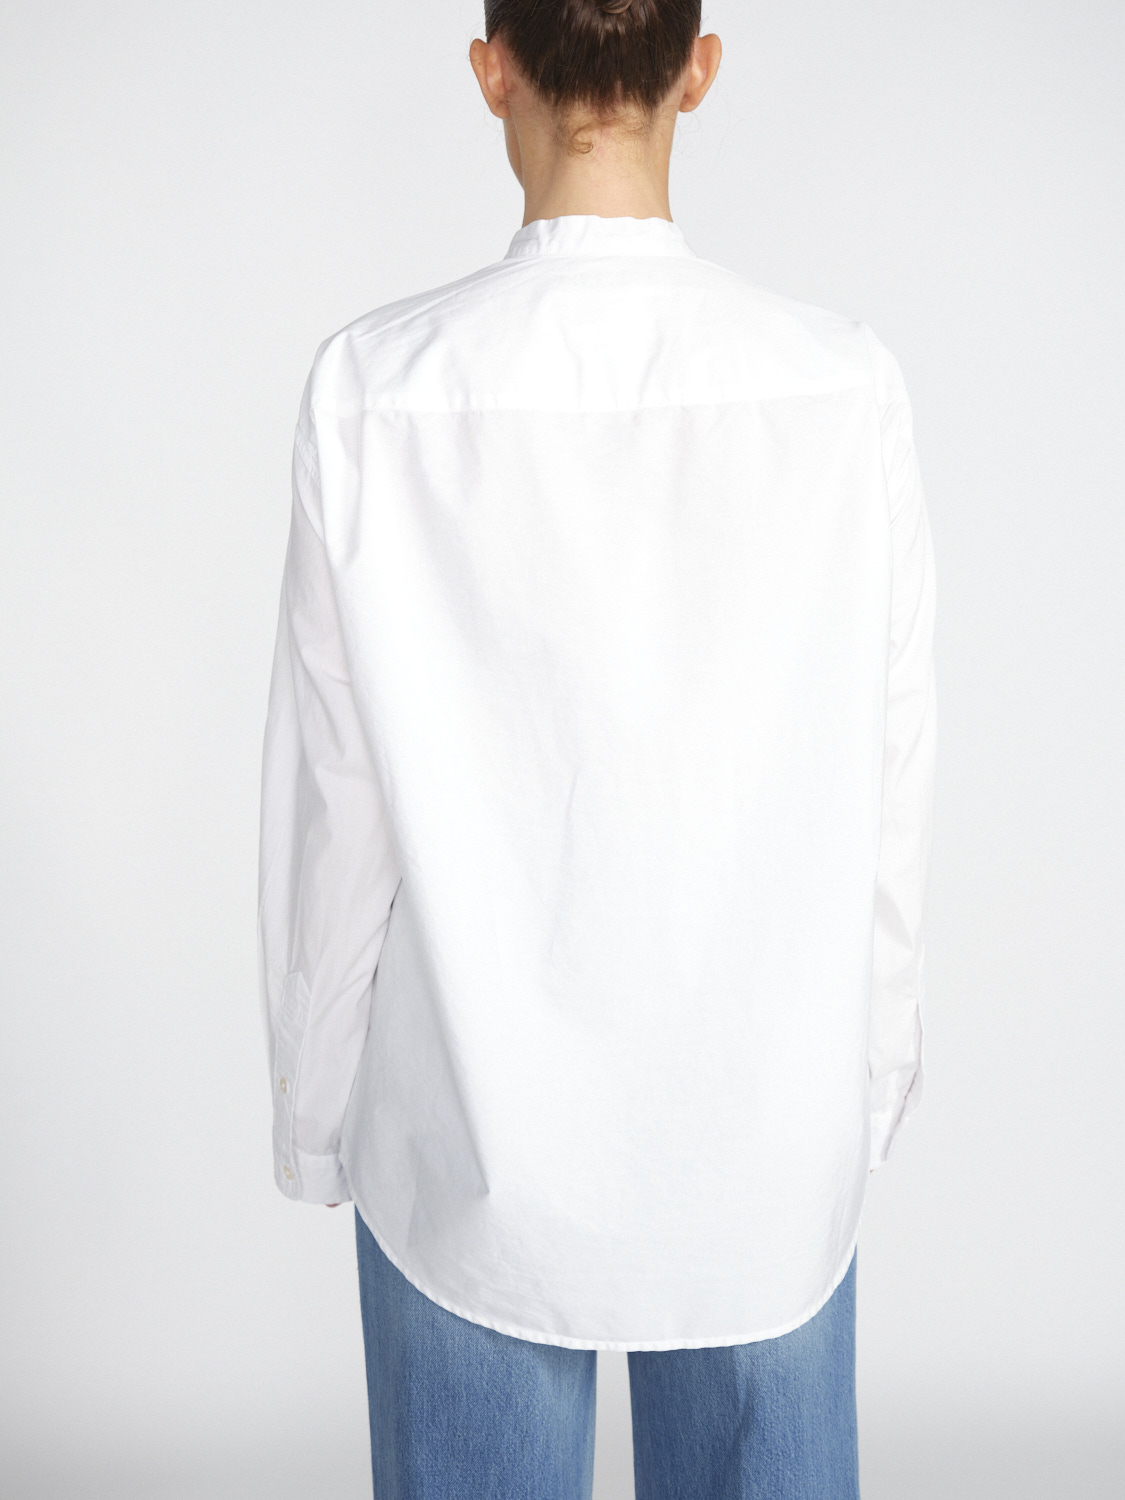 R13 Seamless - Oversized Bluse mit Montagegürtel-Details  weiß XS